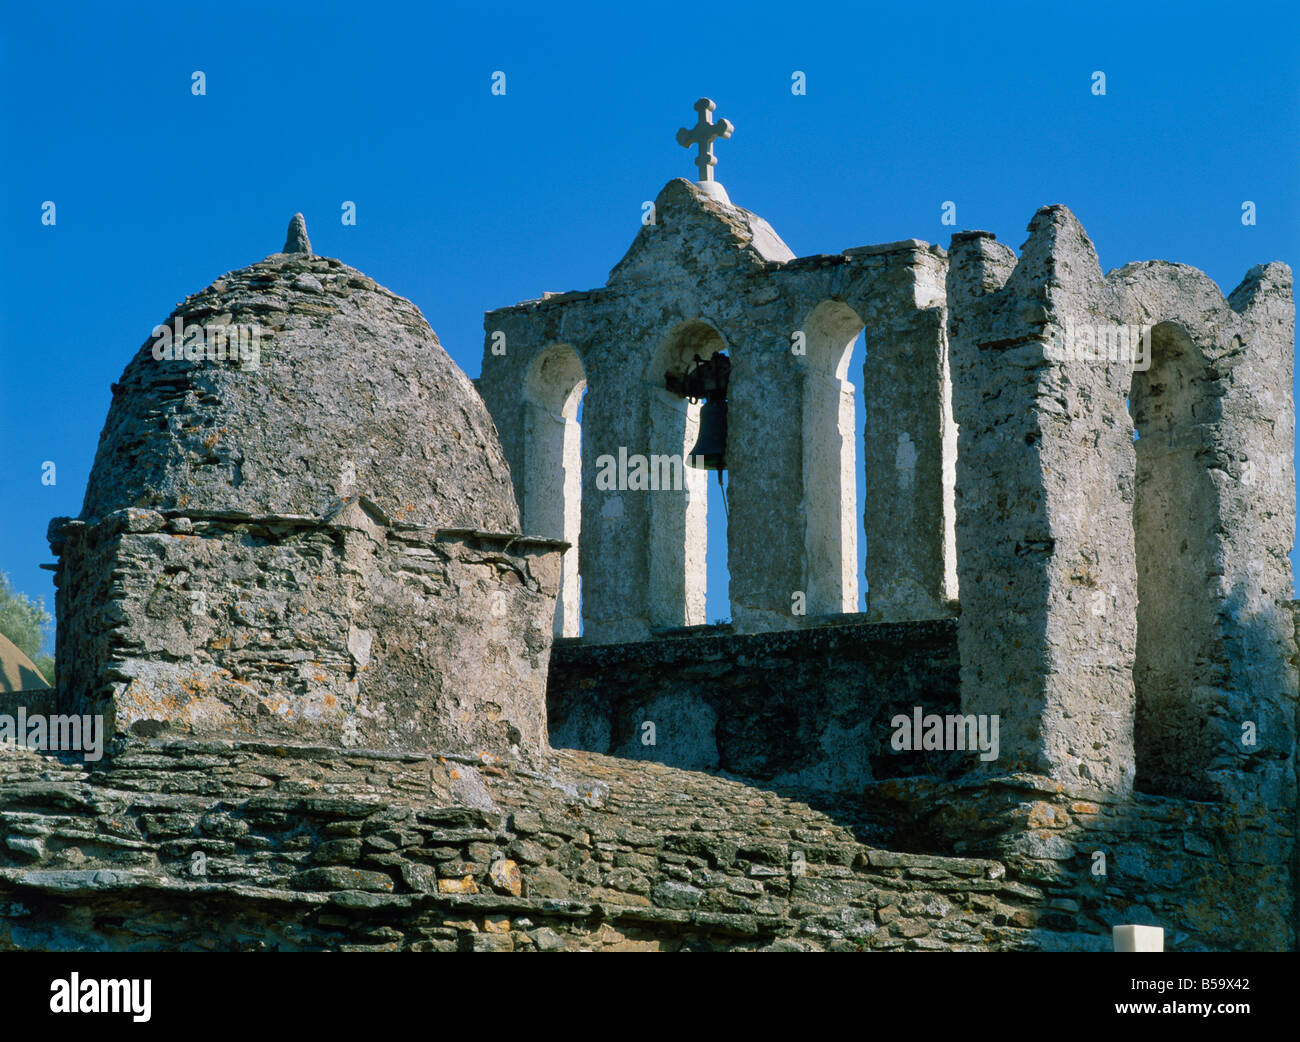 Nahes hohes Dach Kuppel und Glockenturm Turm der Kirche der Muttergottes von Drosiani auf Naxos Kykladen griechische Inseln Griechenland Europa Stockfoto